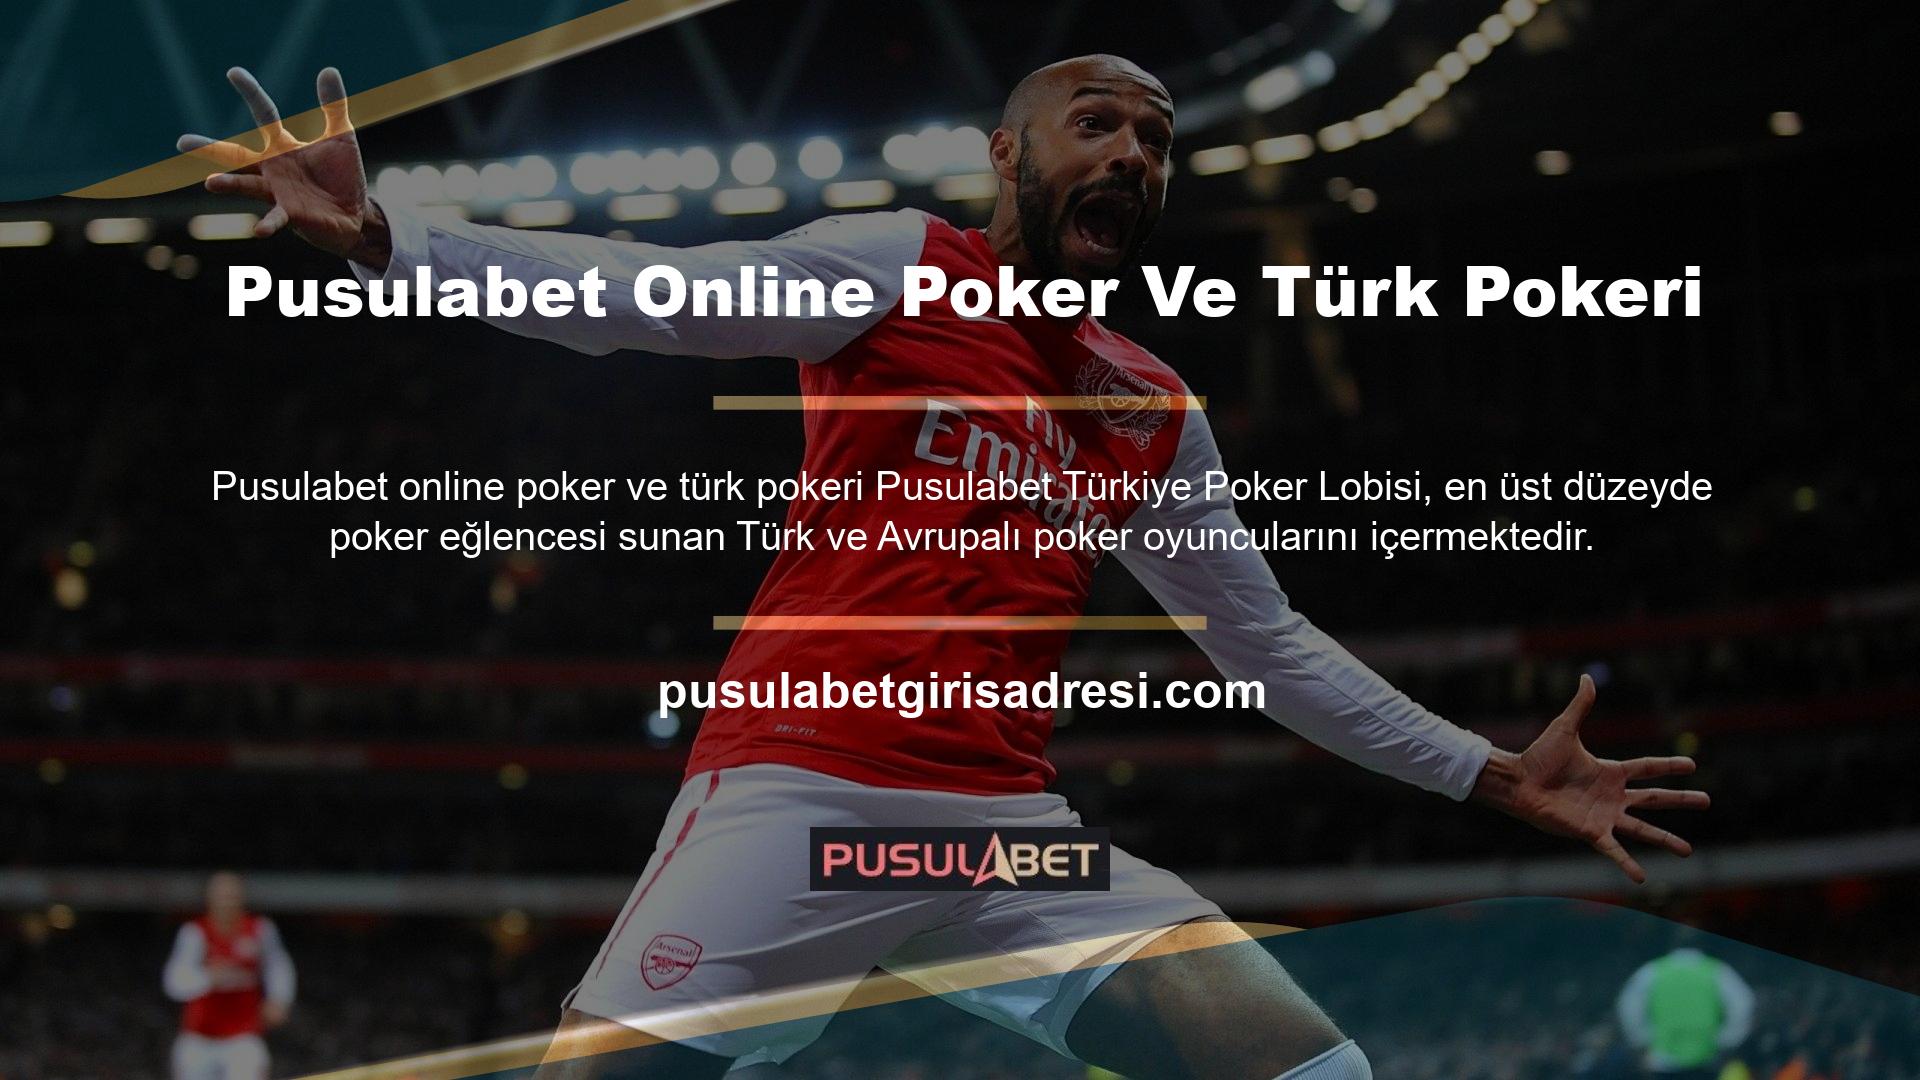 Türk pokerinde yeniyseniz, bugün Pusulabet Türk poker lobisini ziyaret edin